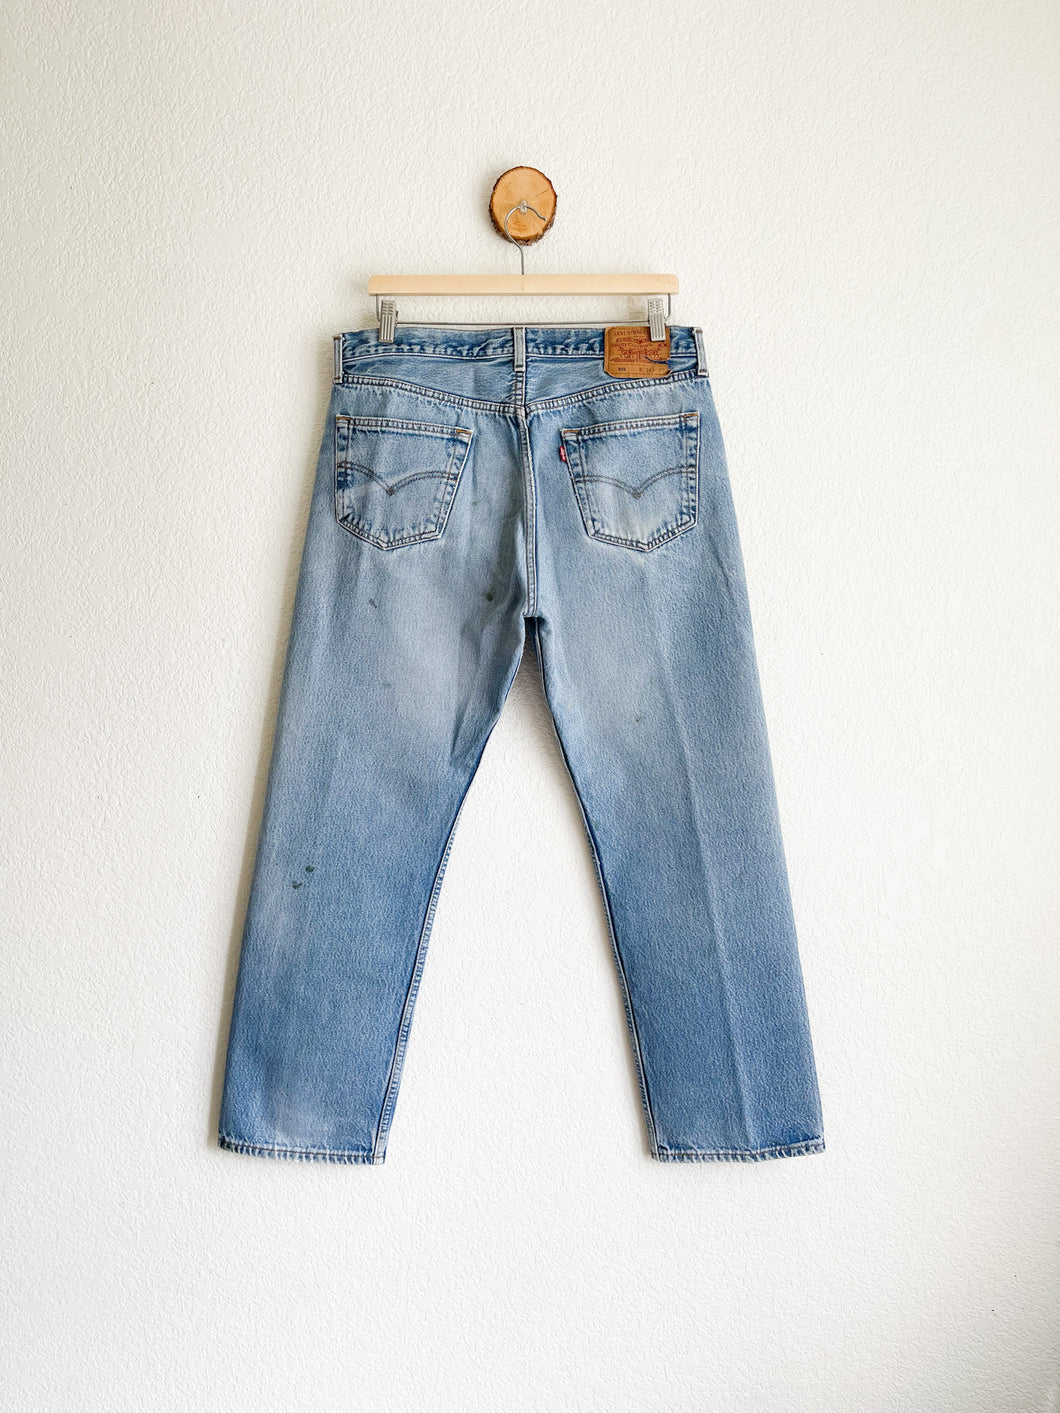 Vintage Levi's 501 Jeans - 34